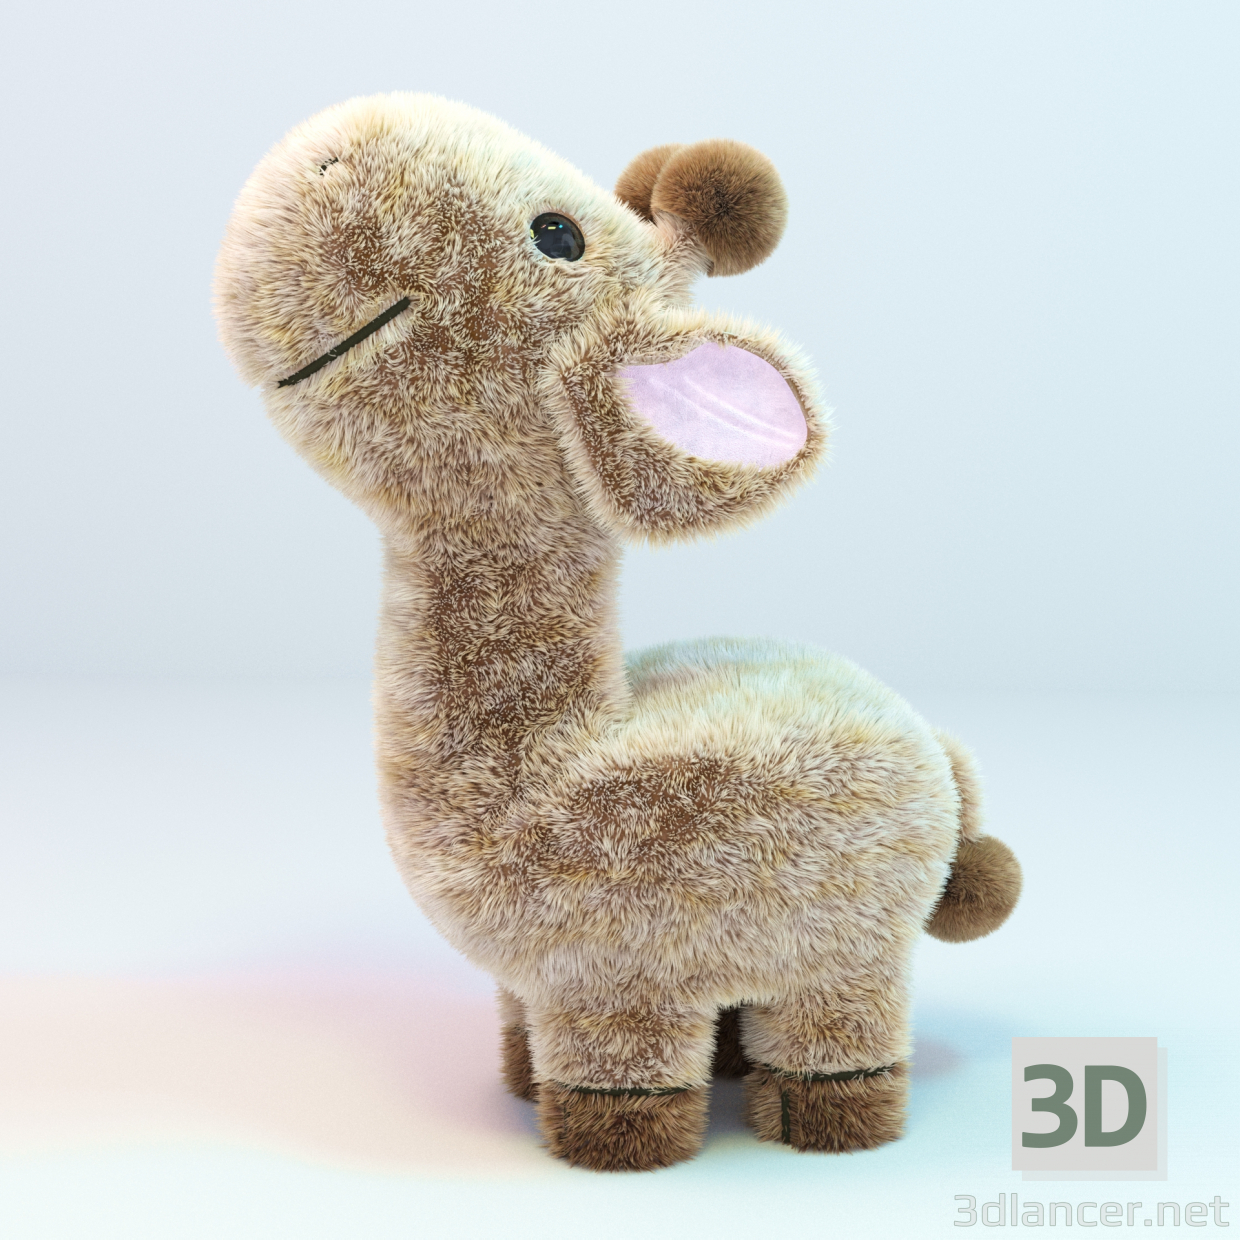 Giraffe 3D-Modell kaufen - Rendern